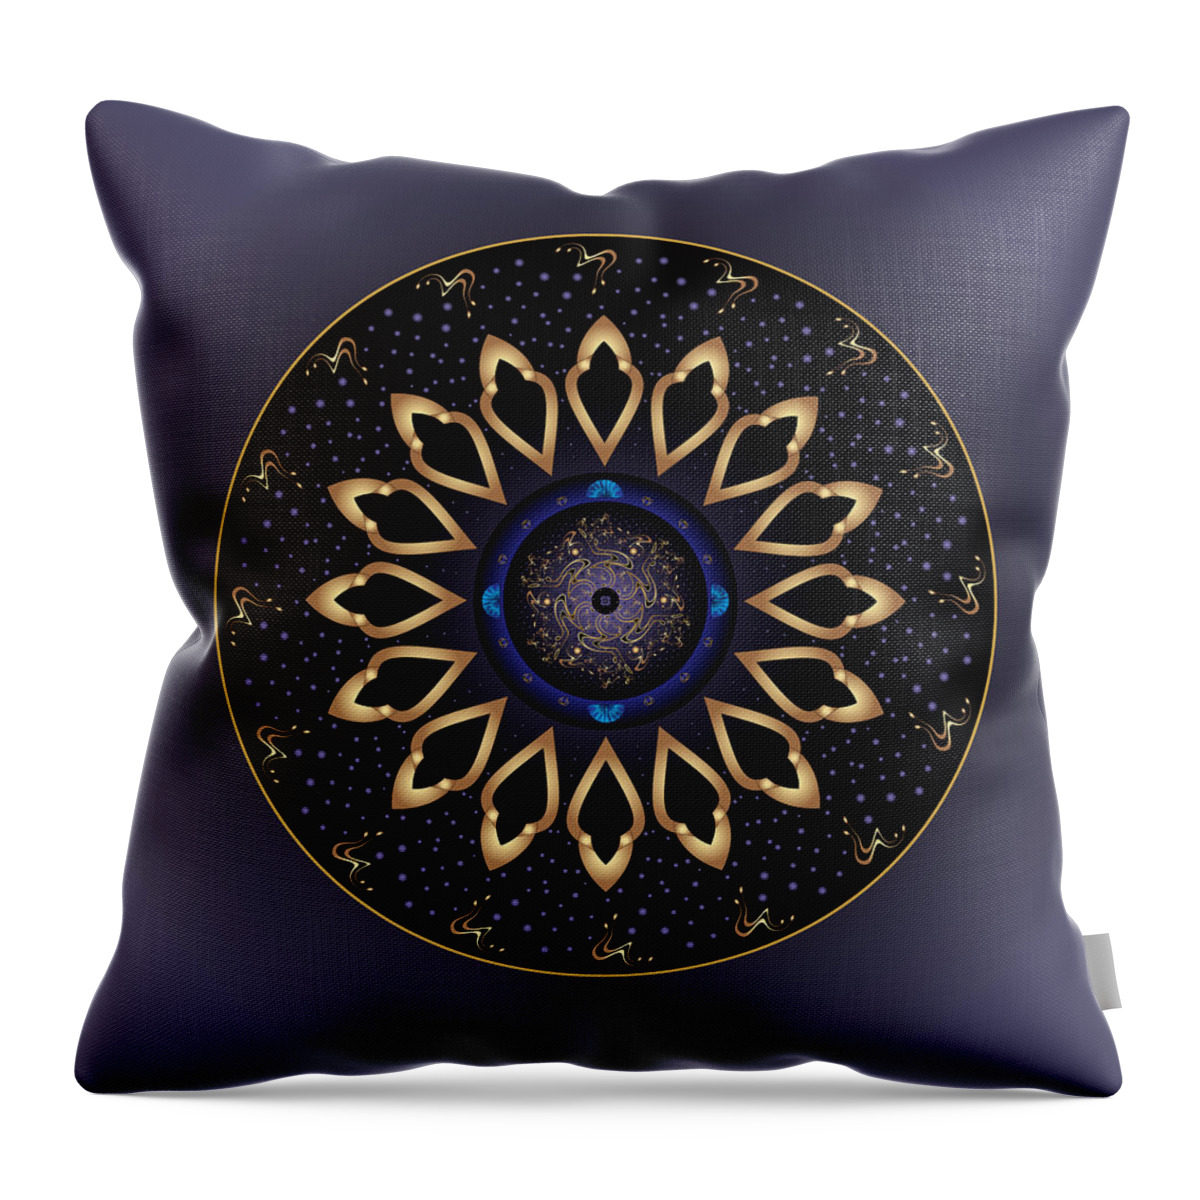 Mandala Throw Pillow featuring the digital art Circulosity No 3138 by Alan Bennington